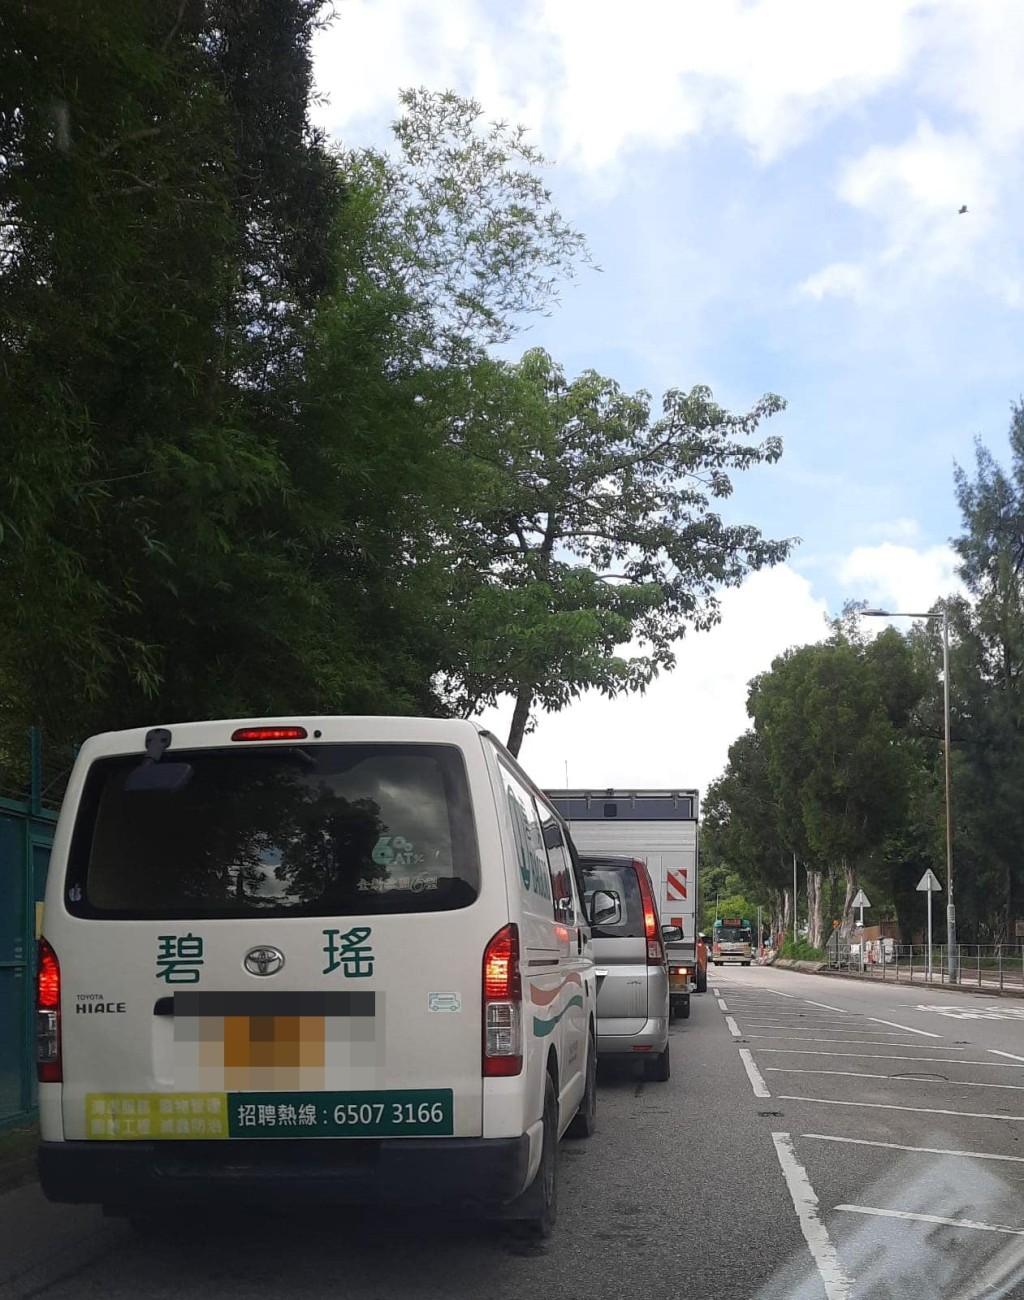 現場交通一度擠塞。fb：車cam L（香港群組）